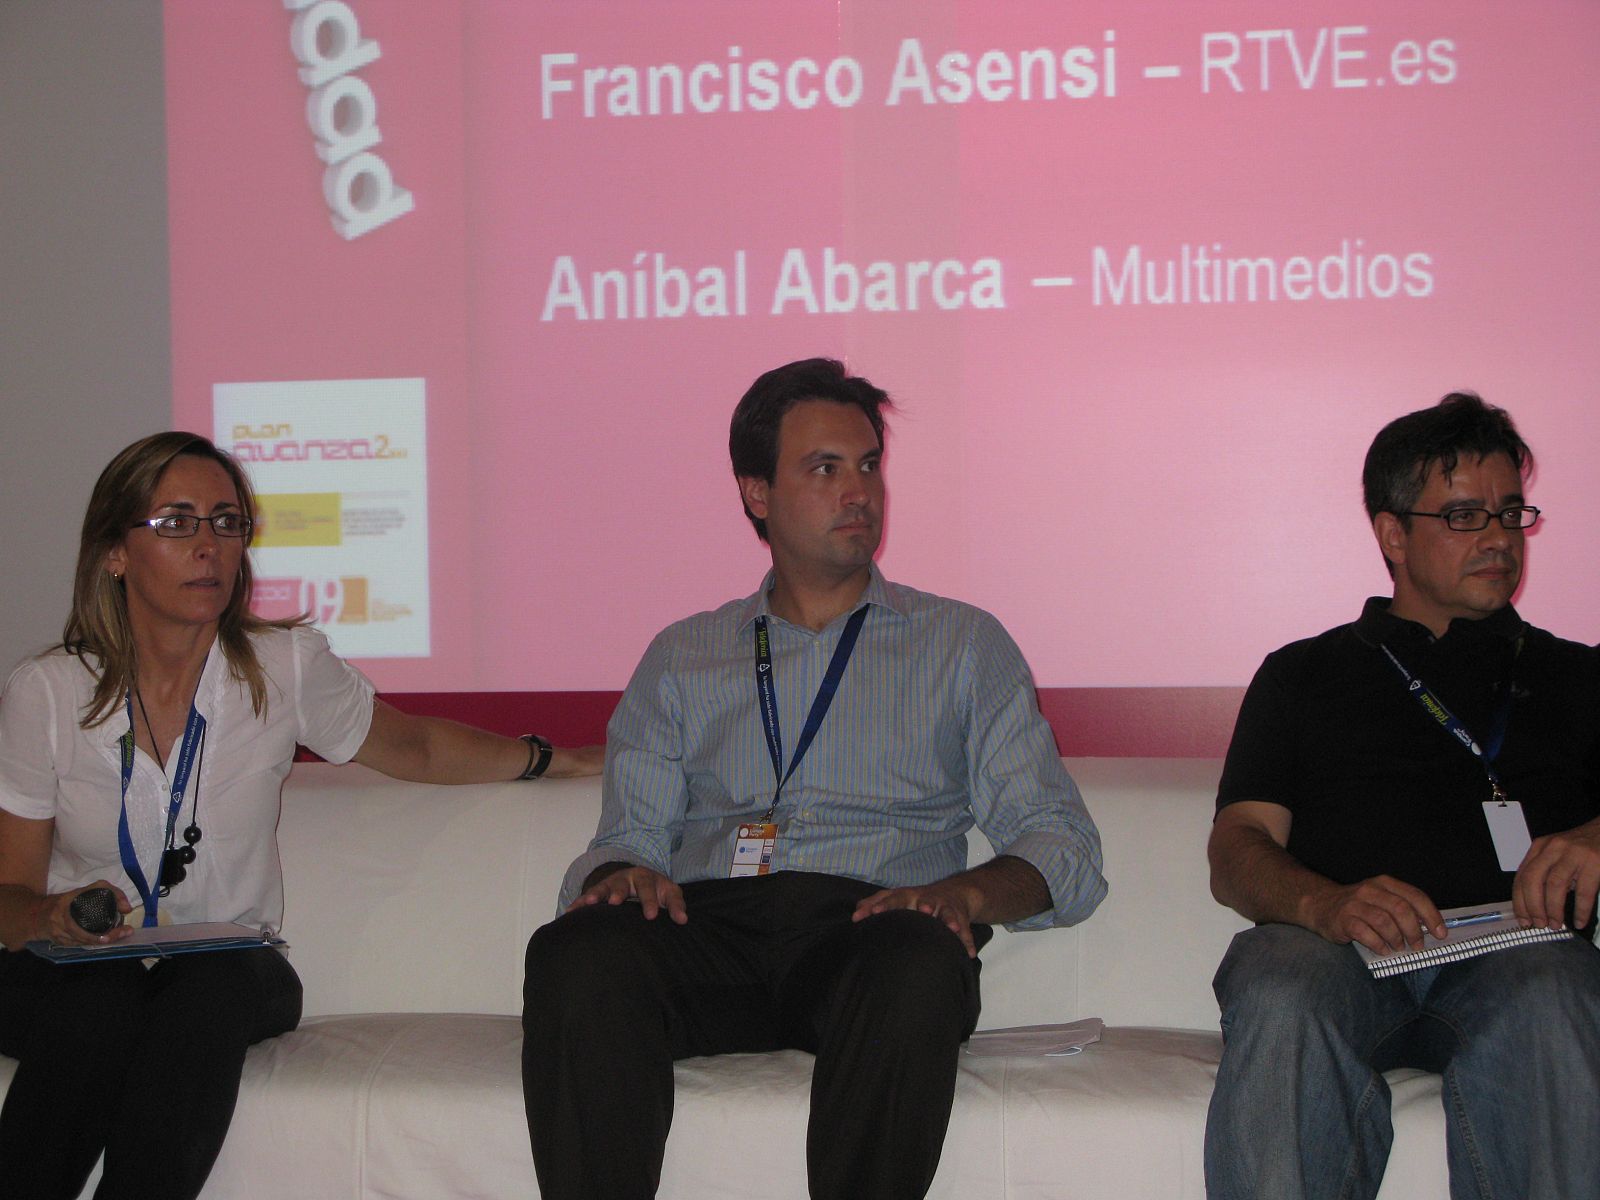 De izquierda a derecha, Koro Castellano, Unidad Editorial; Aníbal Abarca, Multimedios y Francisco Asensi, RTVE.es